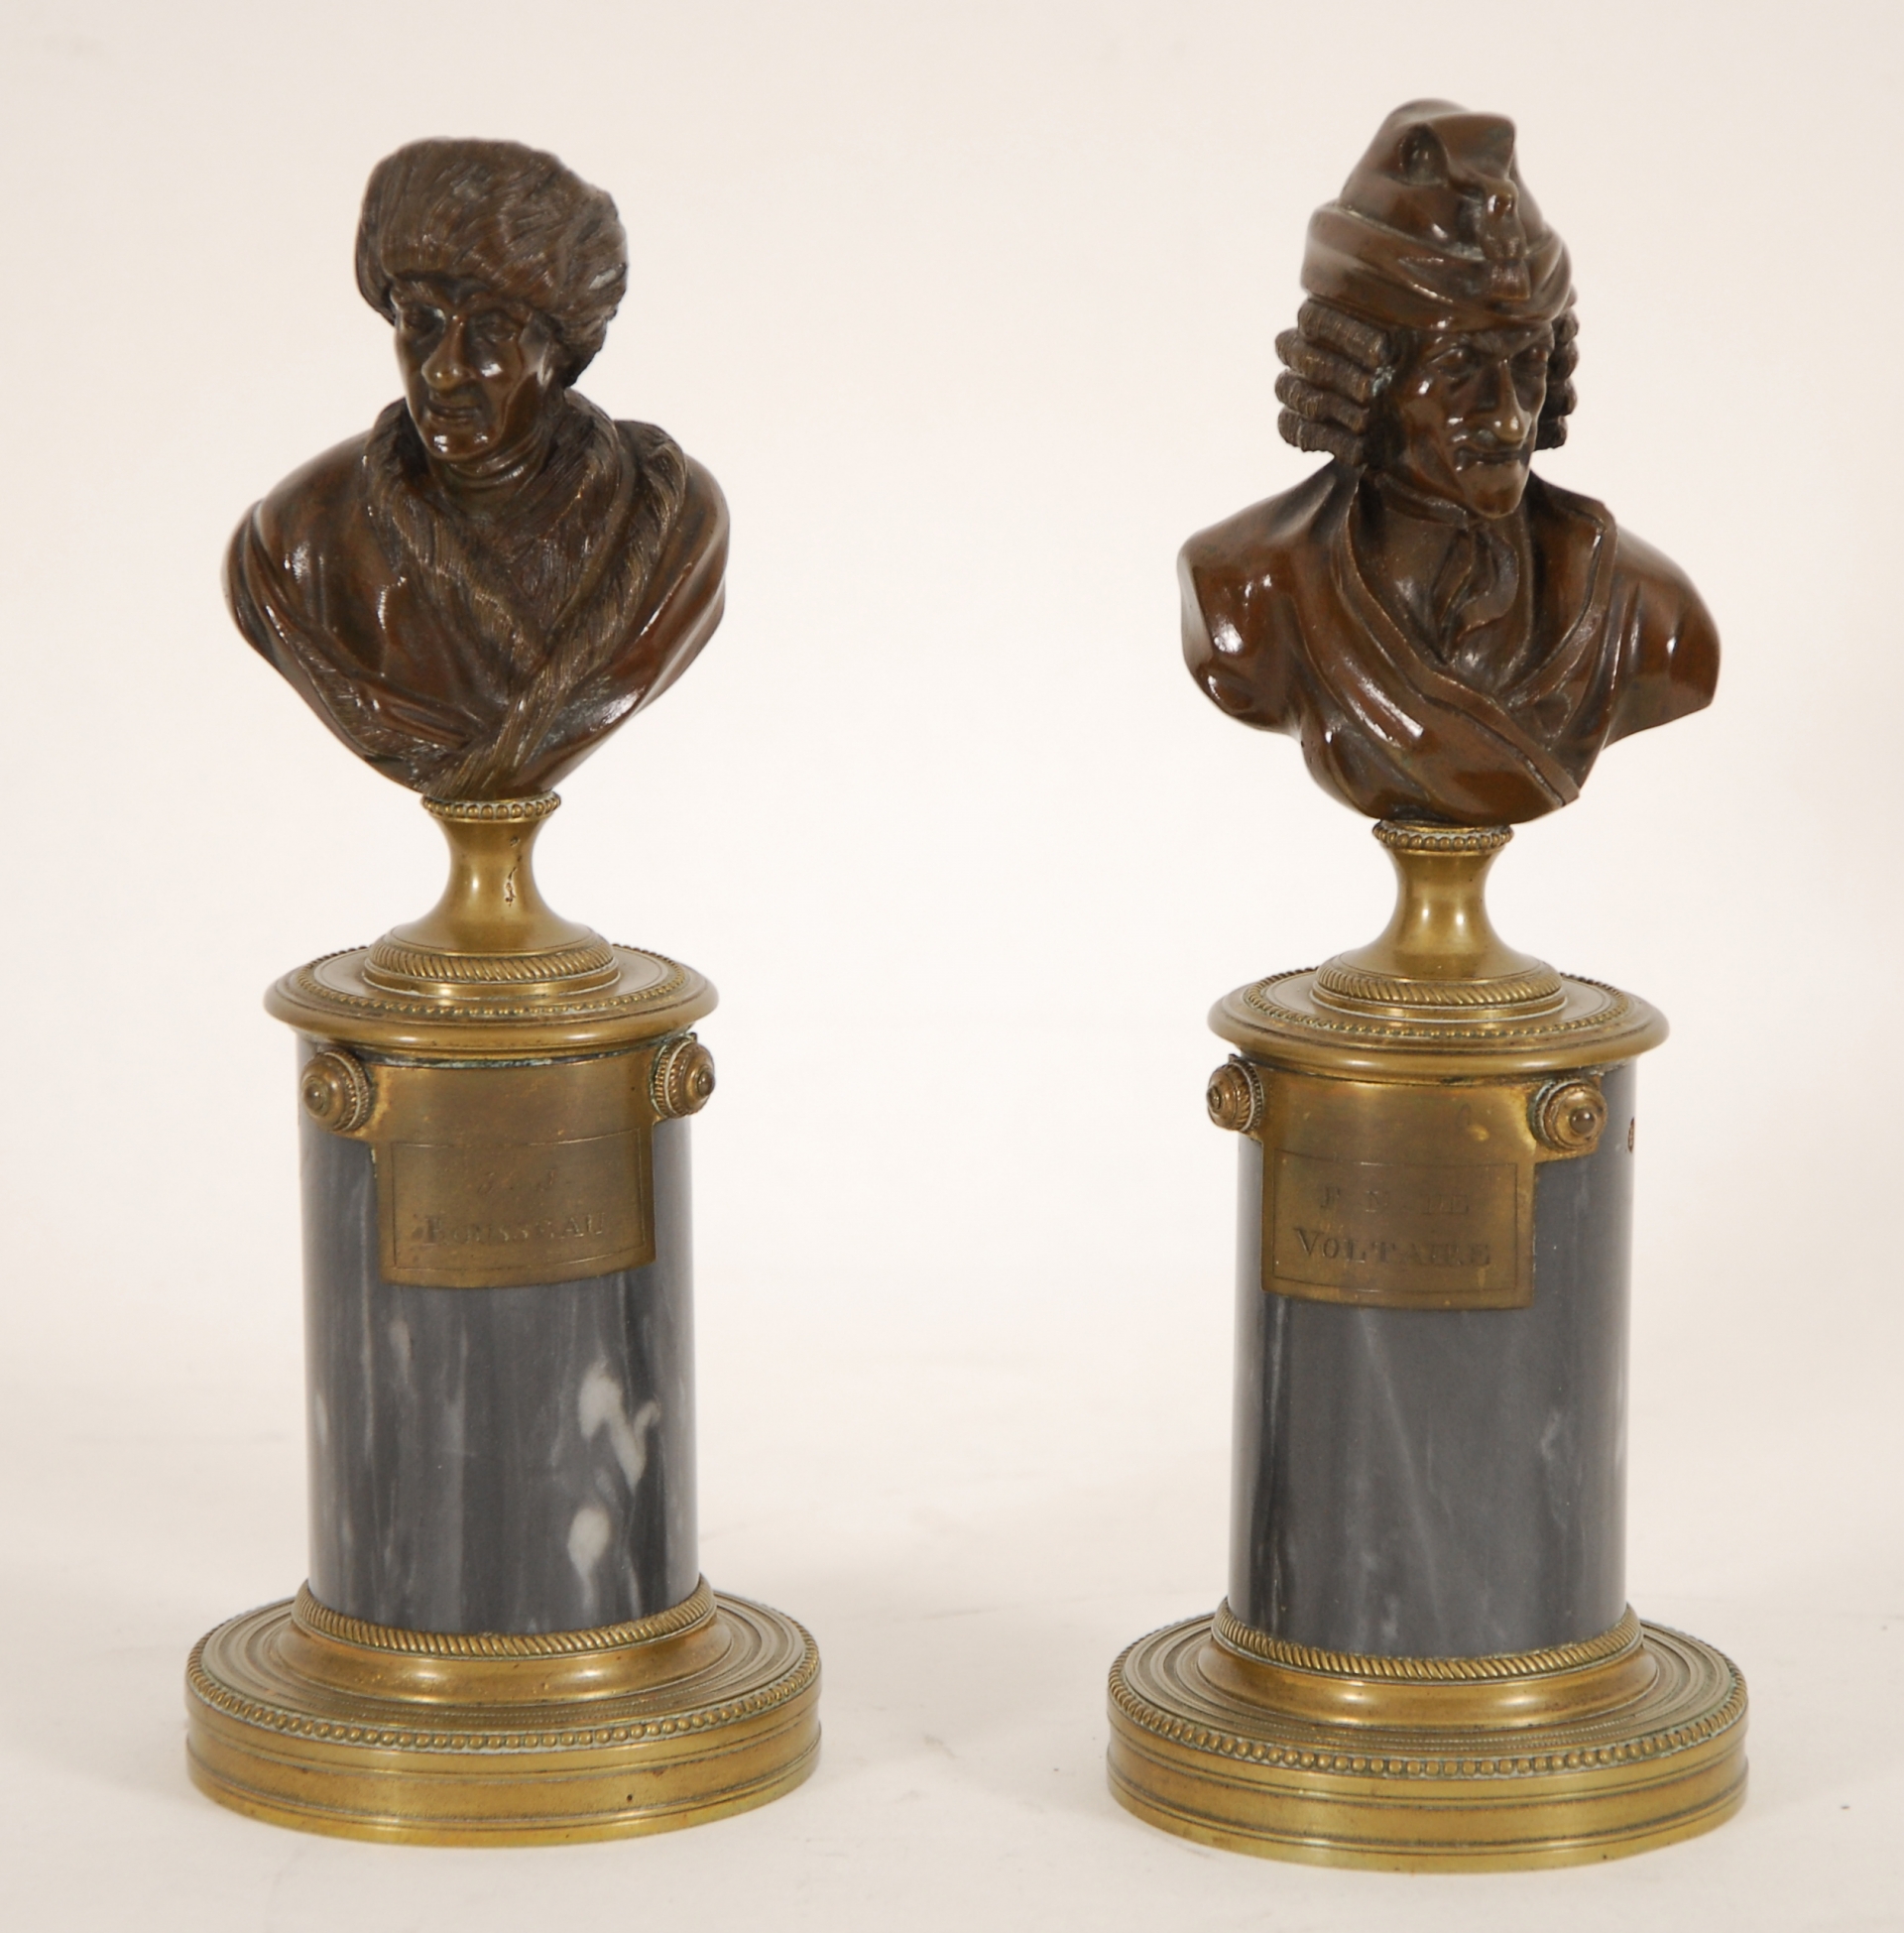 Bustes de Voltaire et de Rousseau